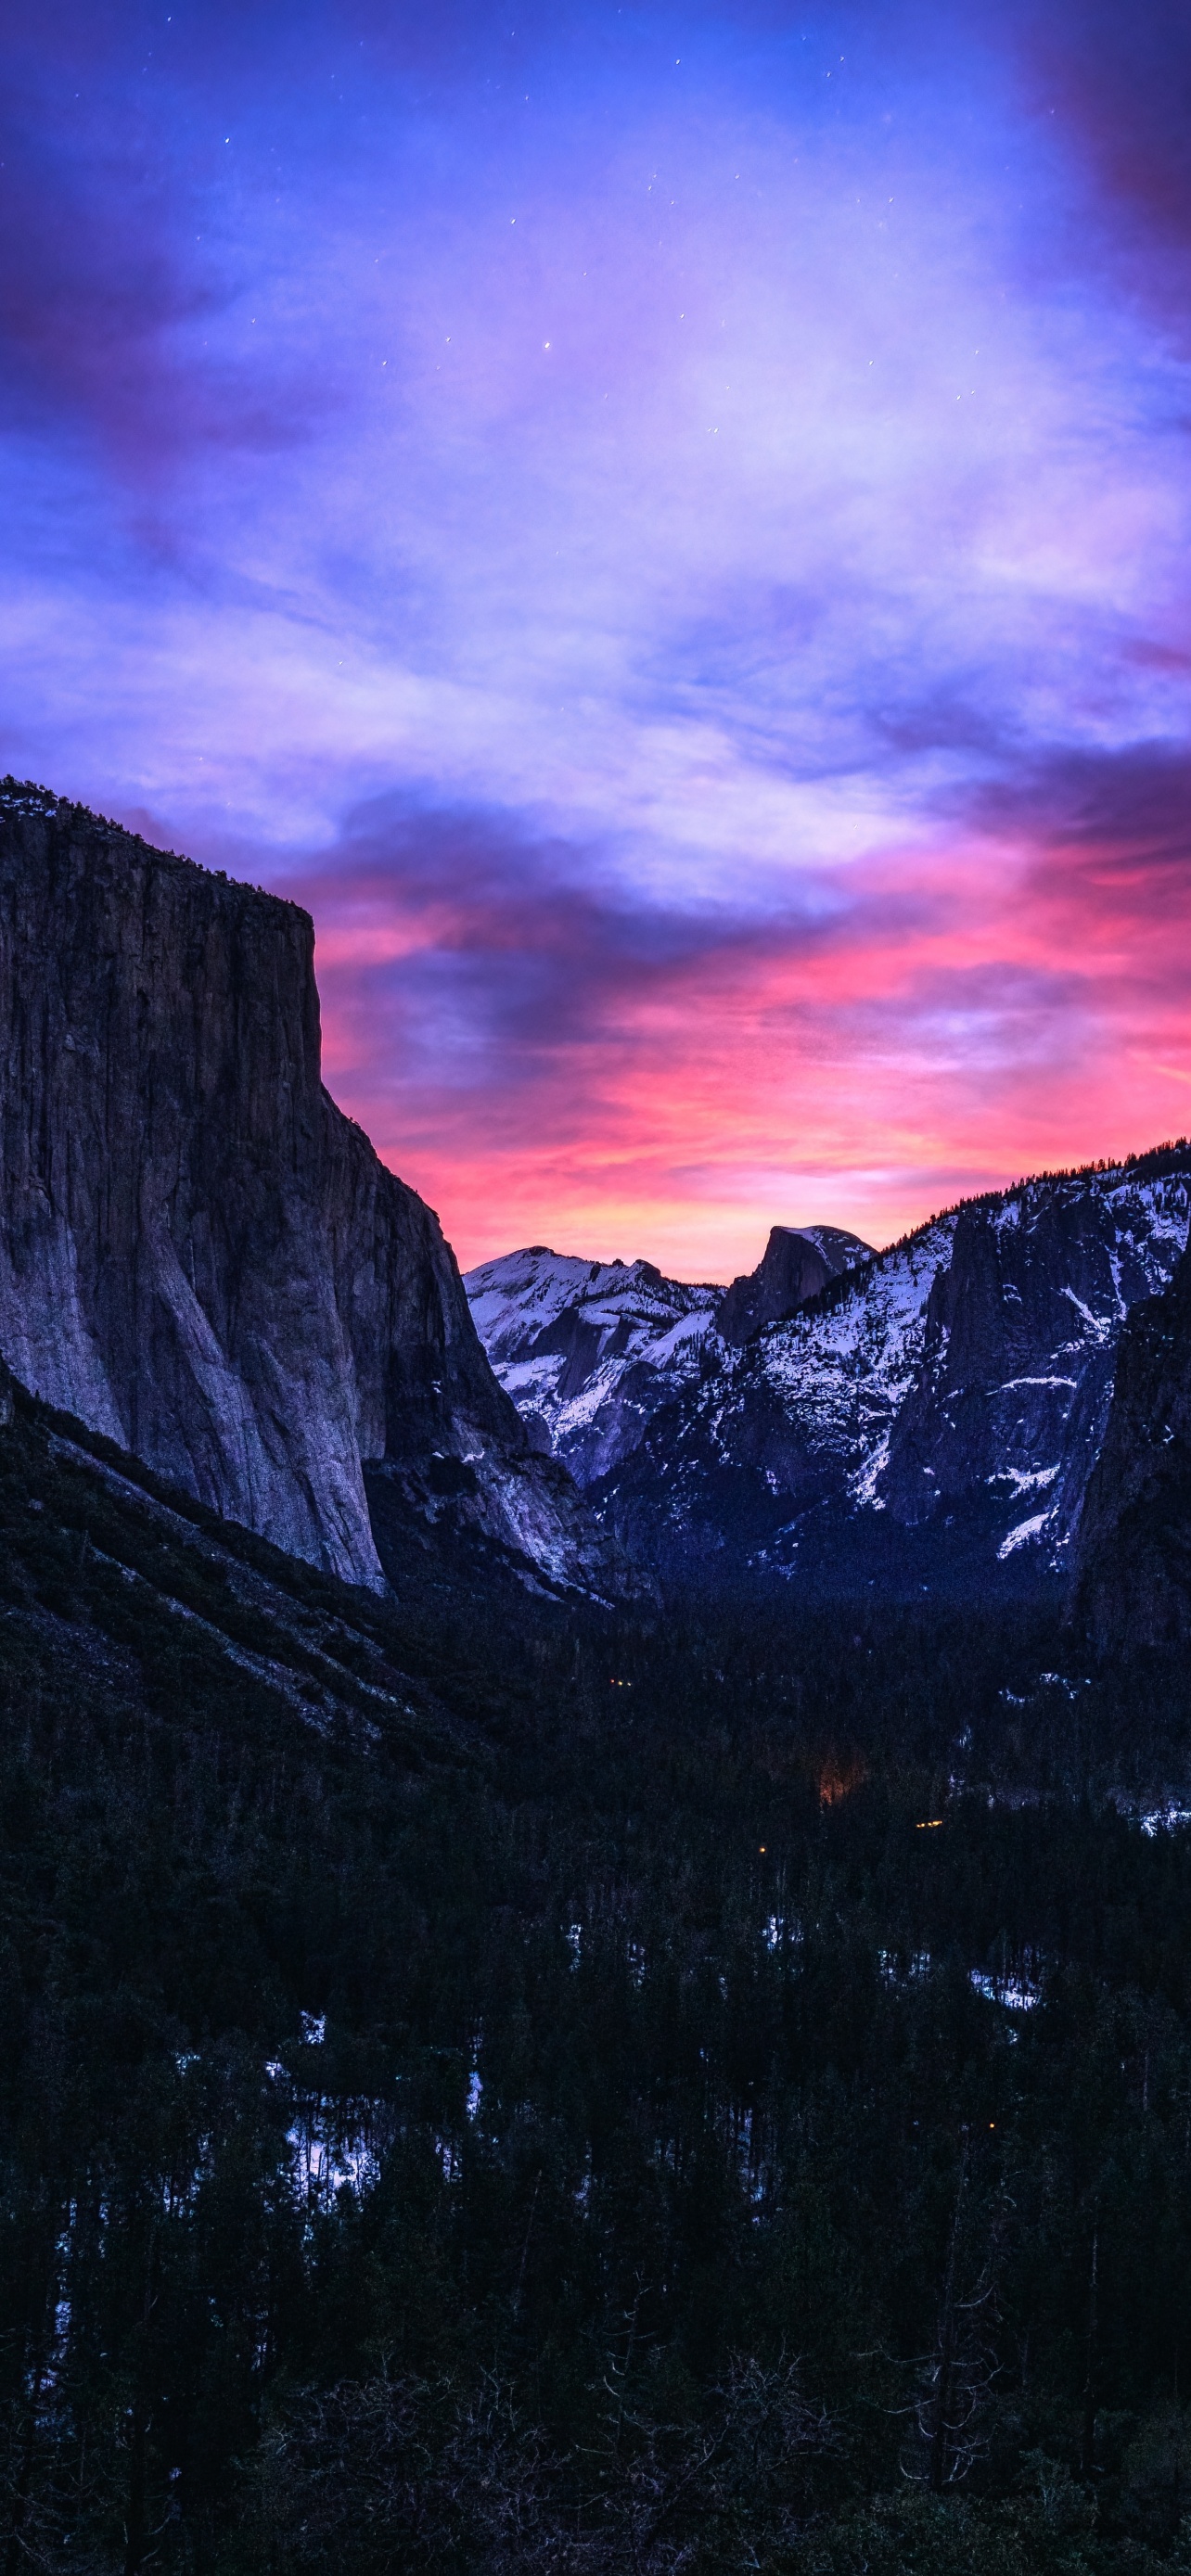 Hình nền Yosemite National Park 4K, bình minh, đường hầm, thiên nhiên (Yosemite National Park Wallpaper 4K, Sunrise, Tunnel View, Nature): Bạn là một tín đồ của thiên nhiên và muốn tìm kiếm cho mình những những hình nền mang lại cảm giác bình yên và hòa mình vào thiên nhiên tươi đẹp? Hãy chiêm ngưỡng bộ sưu tập những hình nền 4K Yosemite National Park với cảnh bình minh rực rỡ và đường hầm kỳ vĩ, giúp bạn tận hưởng những khoảnh khắc tuyệt vời.